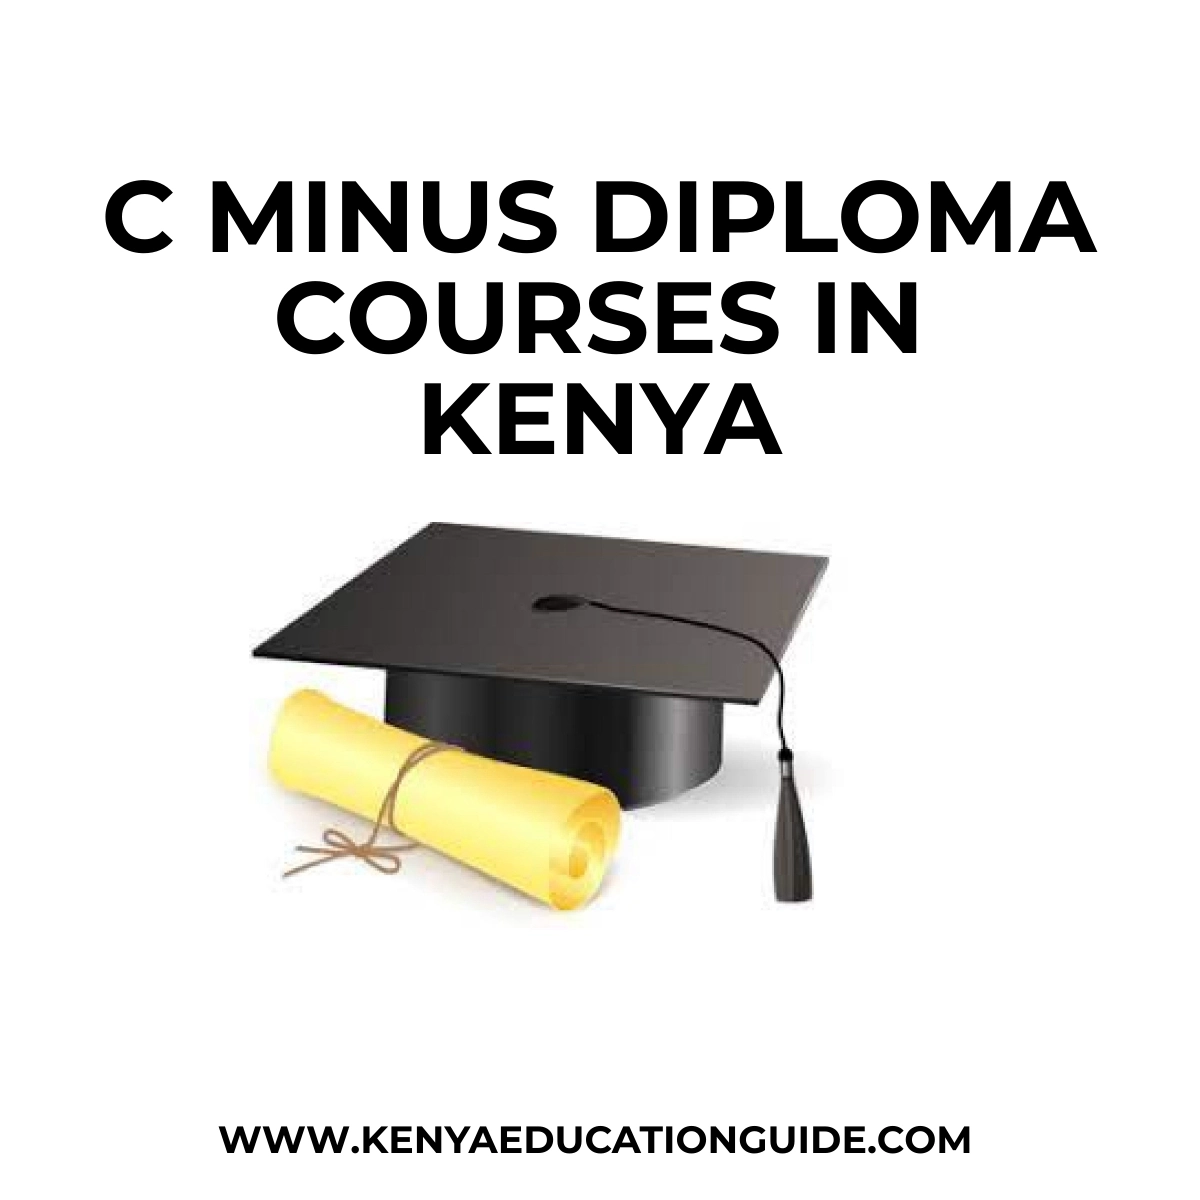 C Minus Diploma Courses in Kenya